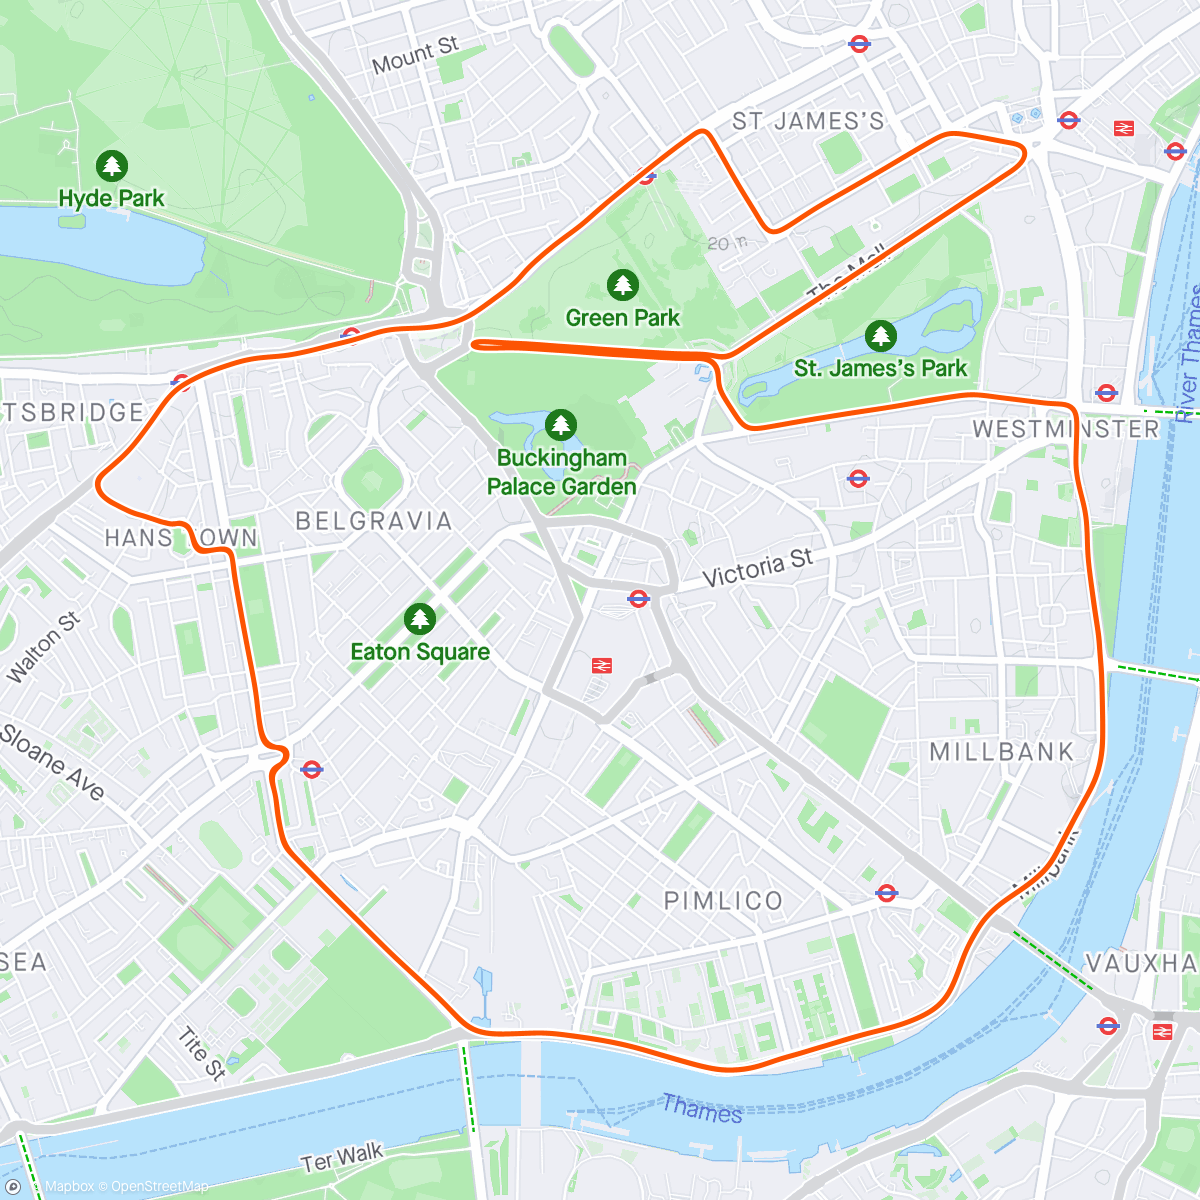 「Zwift - Ramp Test on Greater London Flat in London」活動的地圖